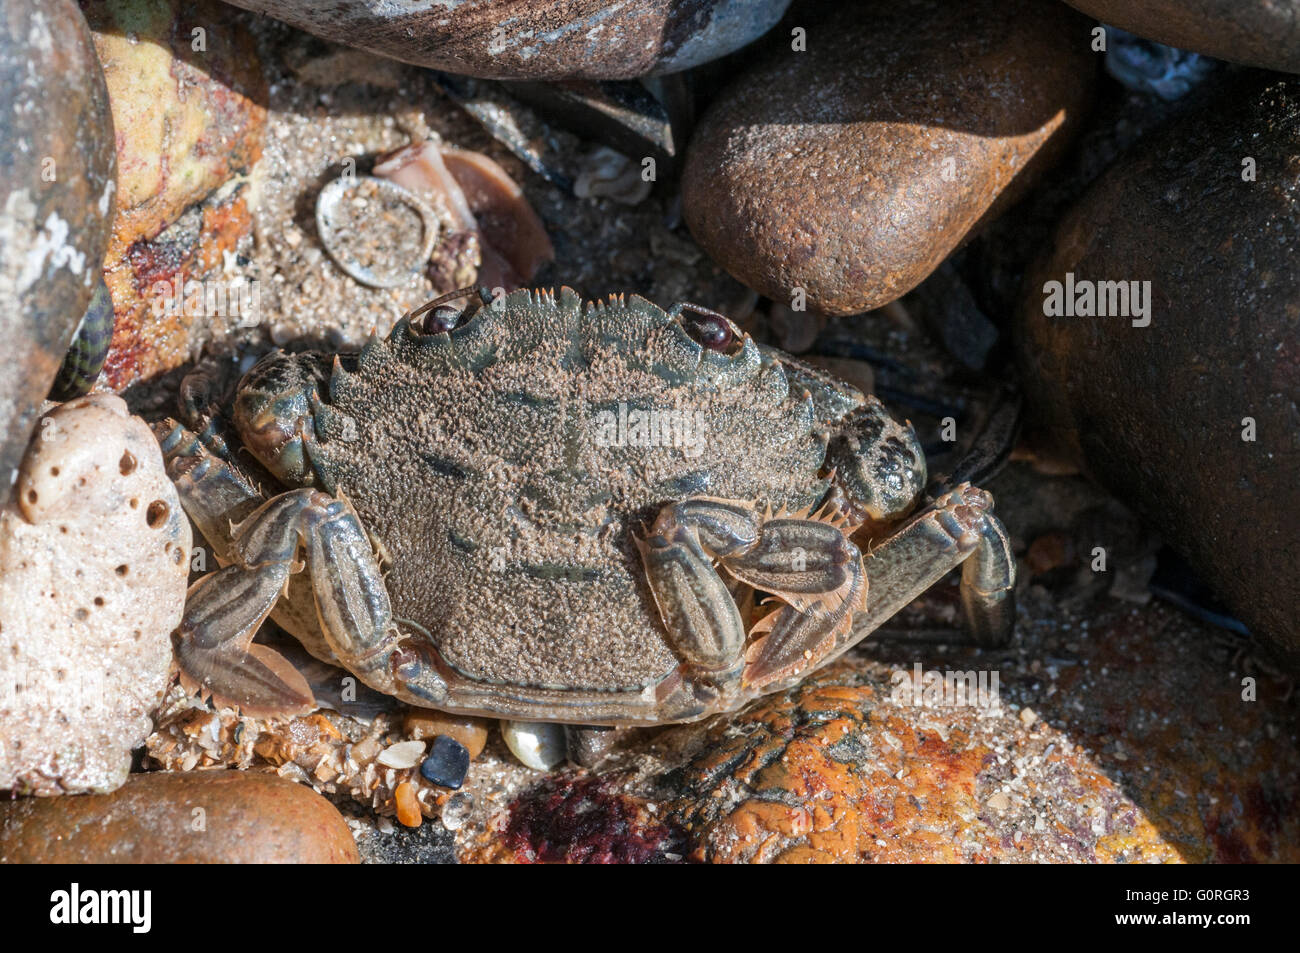 A Velvet Swimming Crab amongst some stones Stock Photo